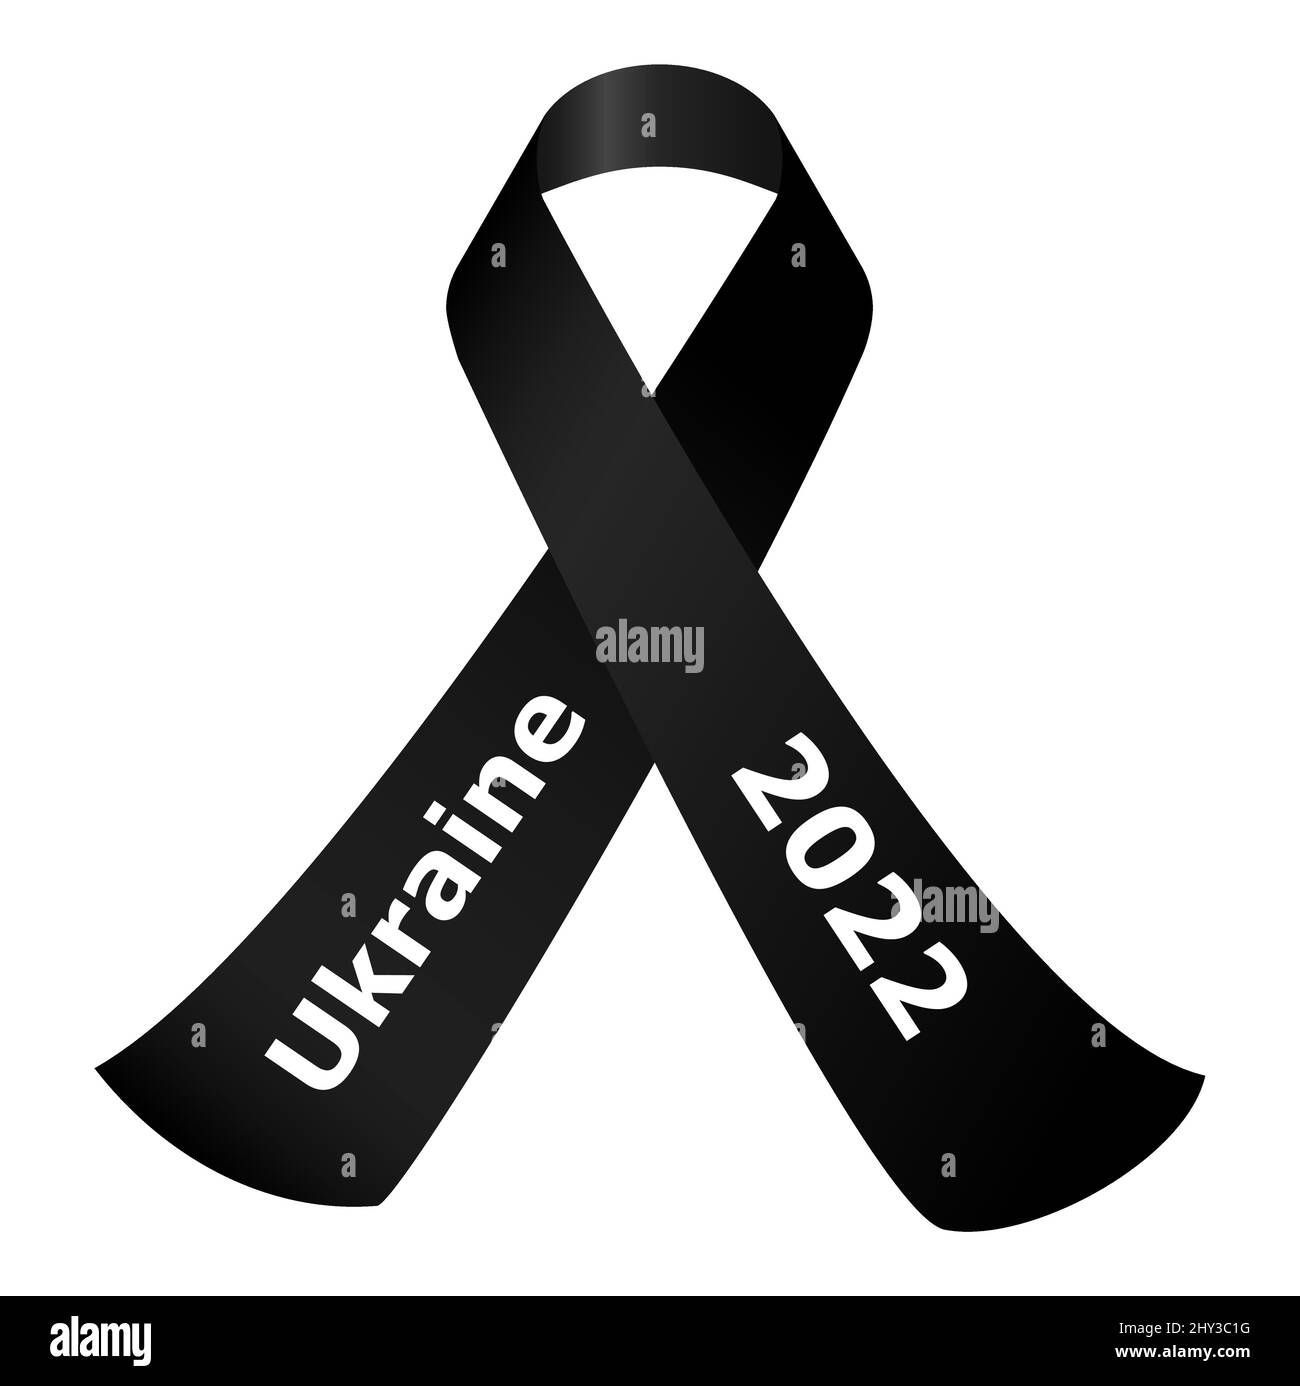 illustration vectorielle eps du ruban noir de deuil avec texte ukraine et 2022 - ARRÊTER LA GUERRE - conflit avec la russie 2022 Illustration de Vecteur